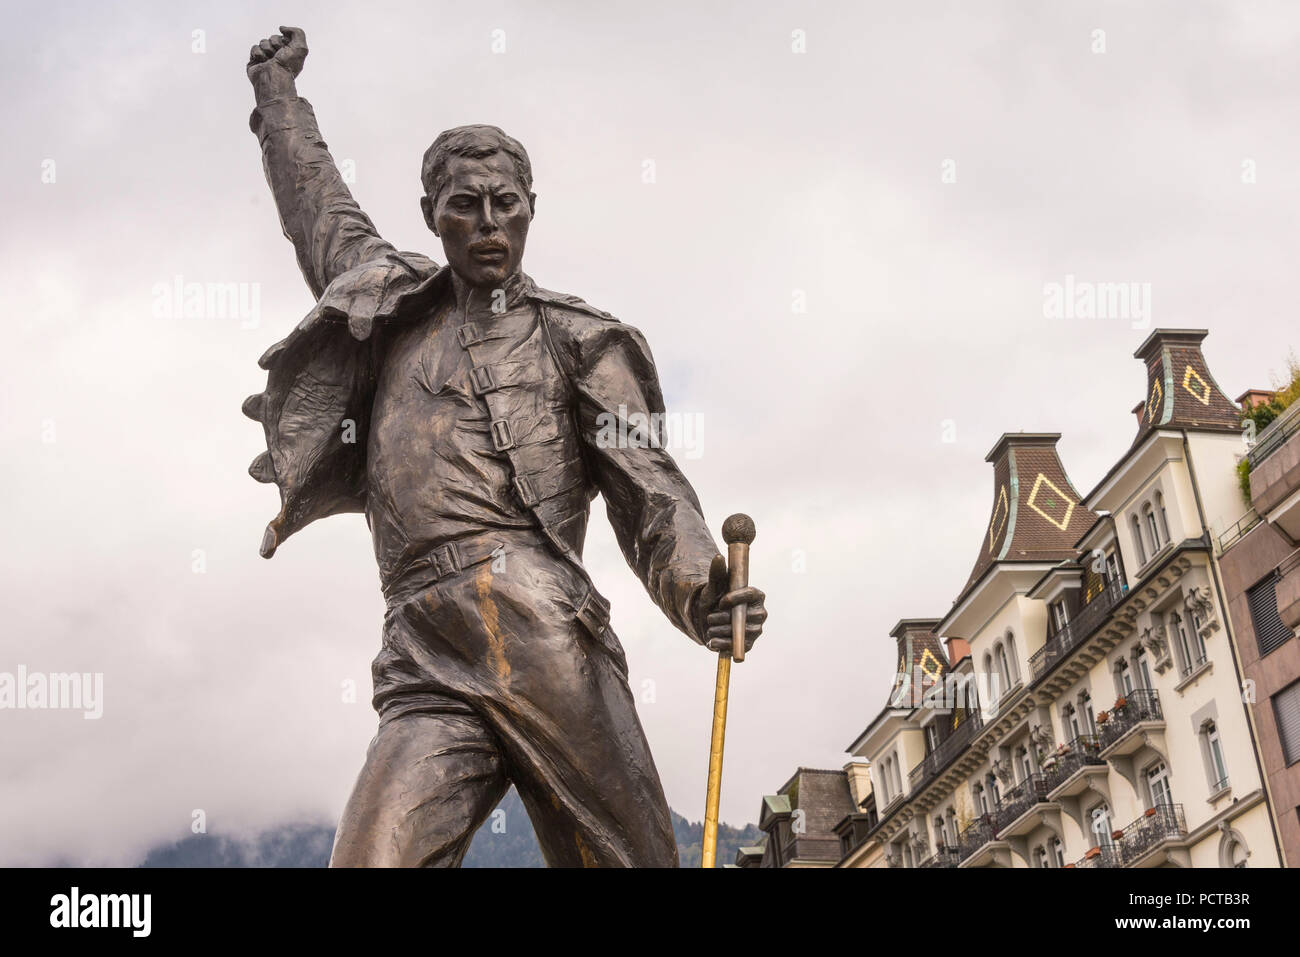 Freddy Mercury Statue am Ufer des Sees, Montreux, Genfer See, Kanton Waadt,  West Switzerland, Schweiz Stockfotografie - Alamy